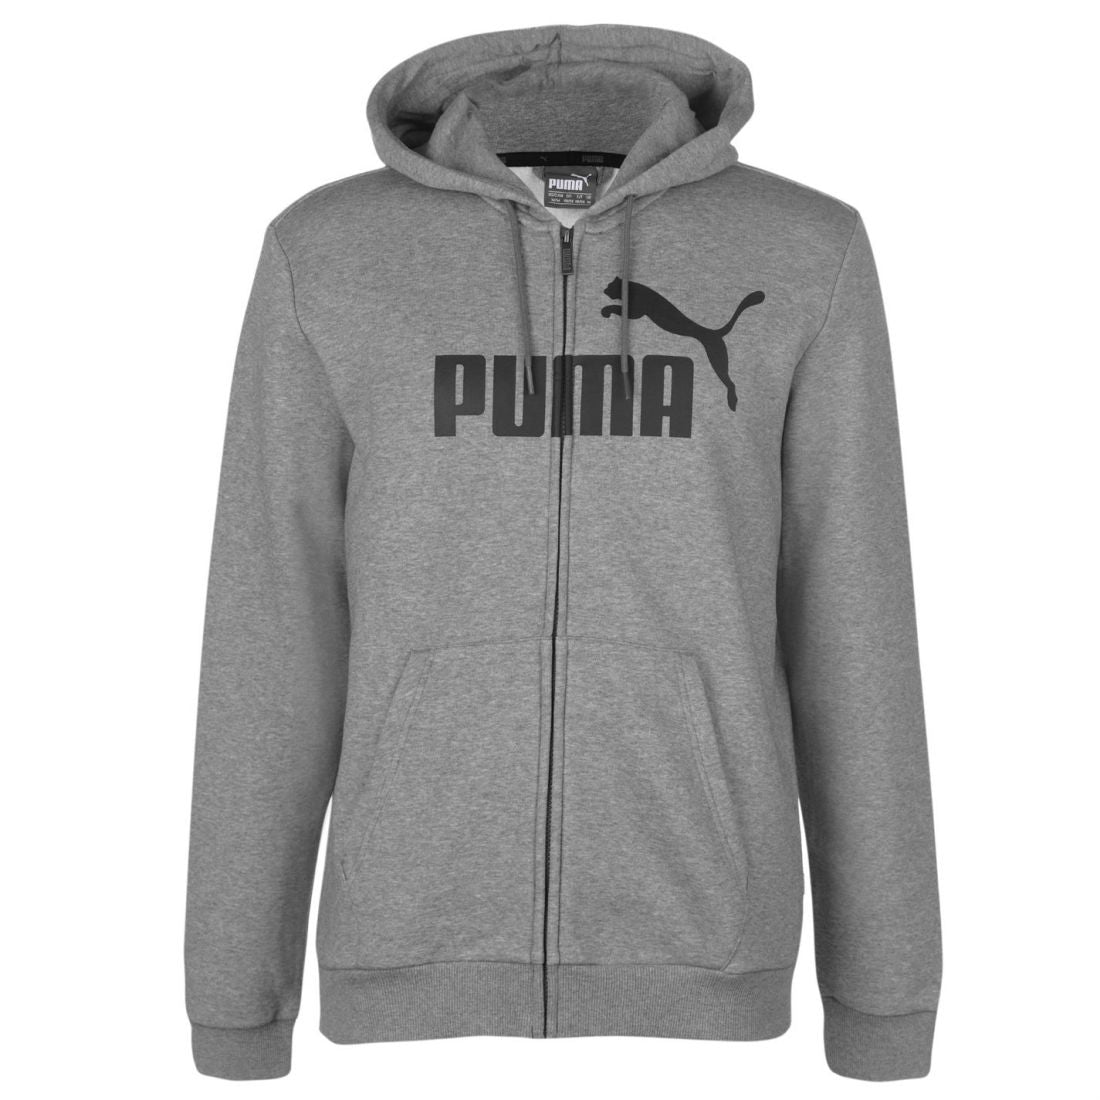 Puma Mens No1 Zip Hoodie Hoody Hooded Top Long Sleeve Lightweight Cotton Full